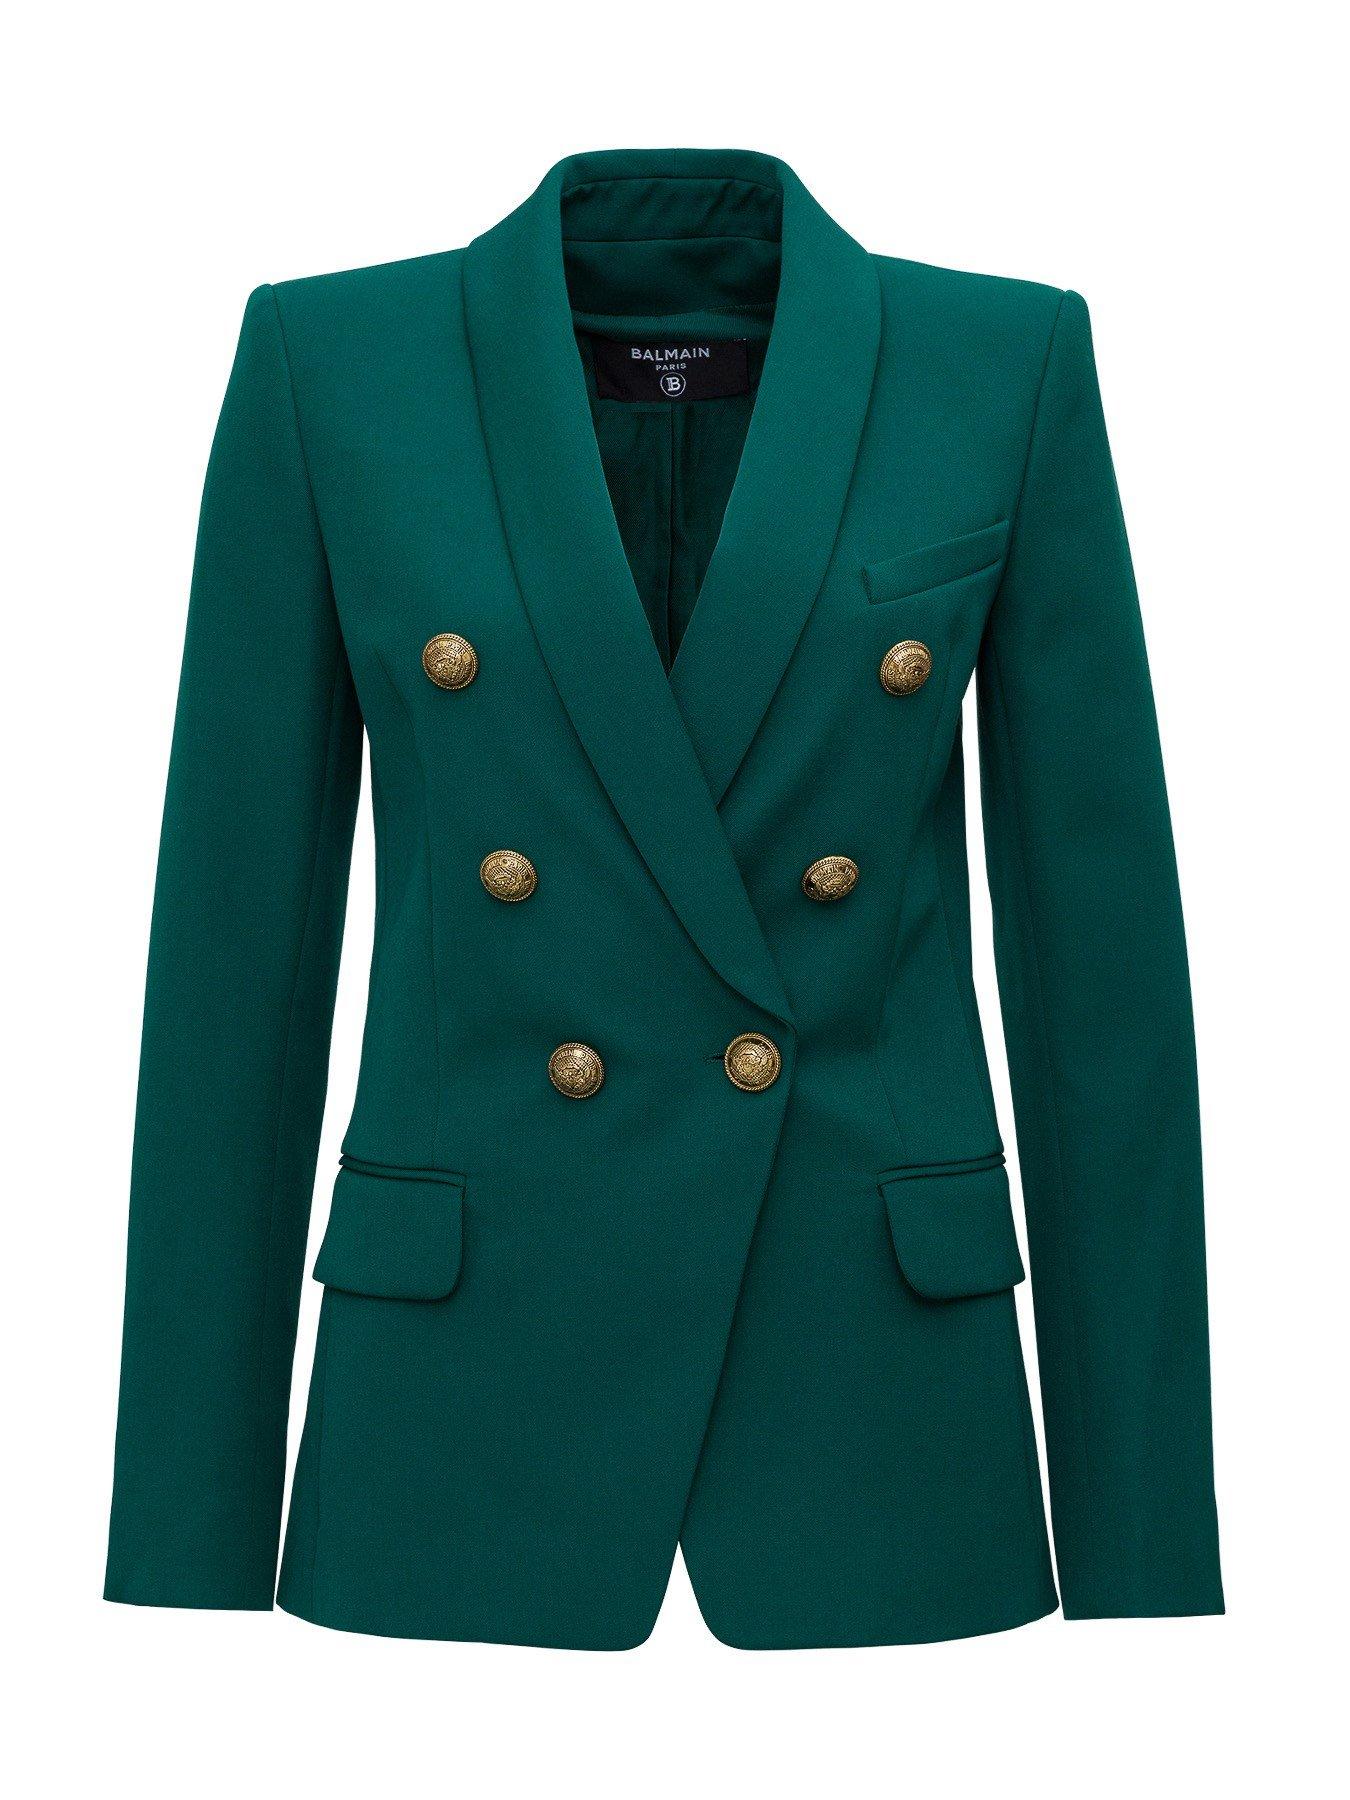 Balmain Wool Double-breasted Blazer, Plain Pattern in Green - Lyst